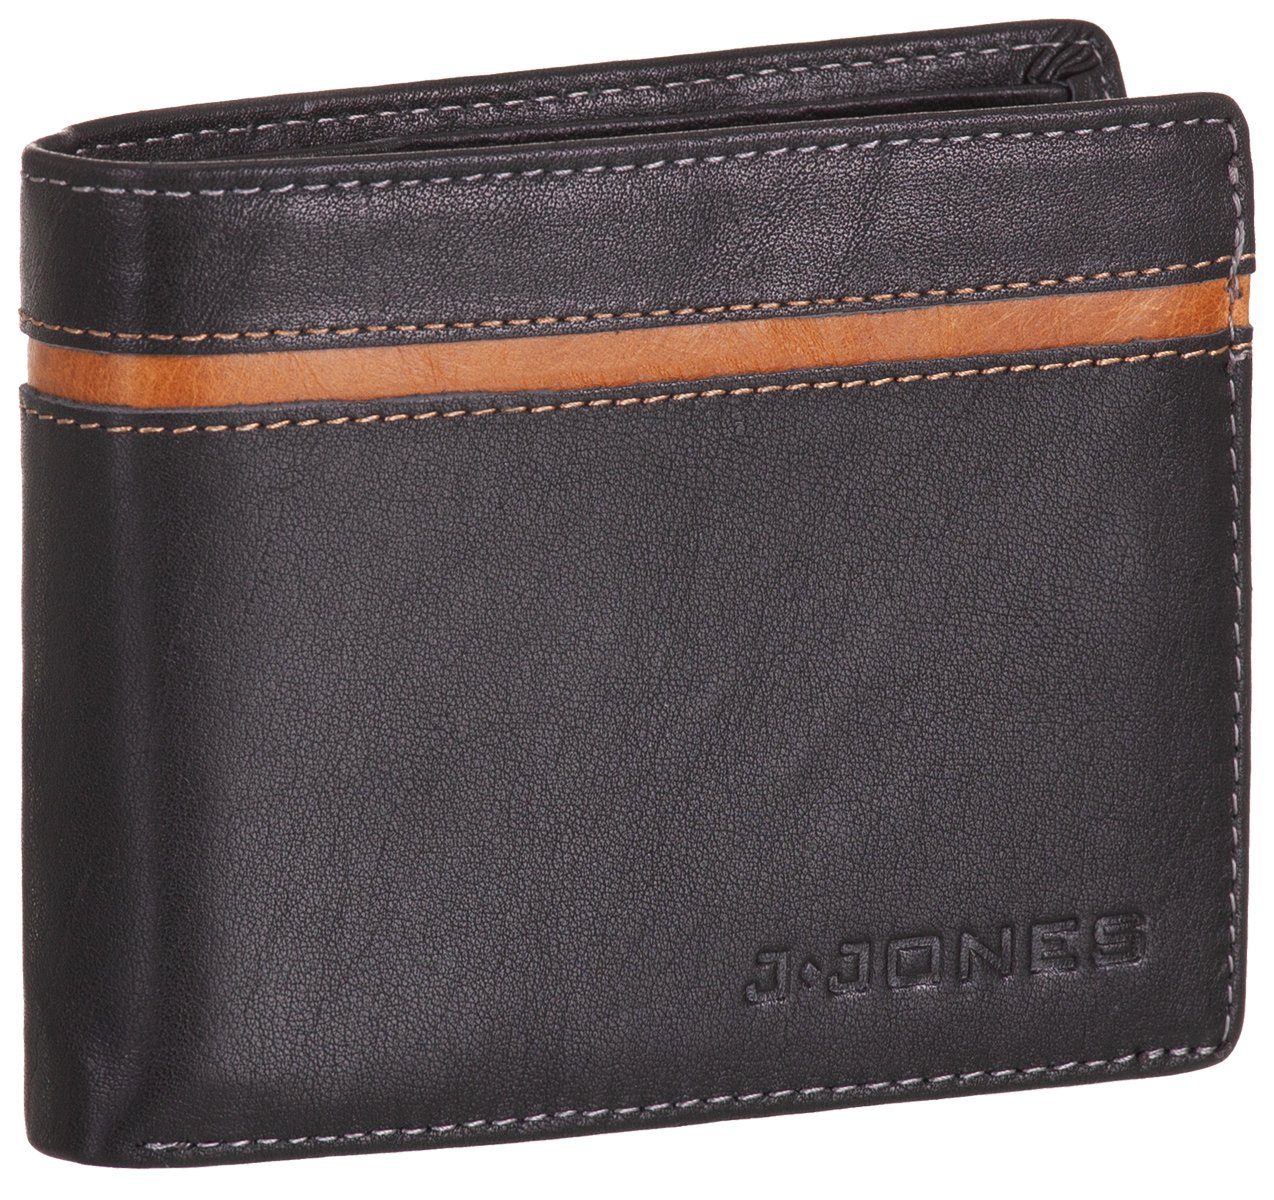 Münzfach RFID-Schutz schwarz-braun Echt mit Portemonnaie faltbar Geldbeutel J.Jones Geldbörse, Leder Geldbörse